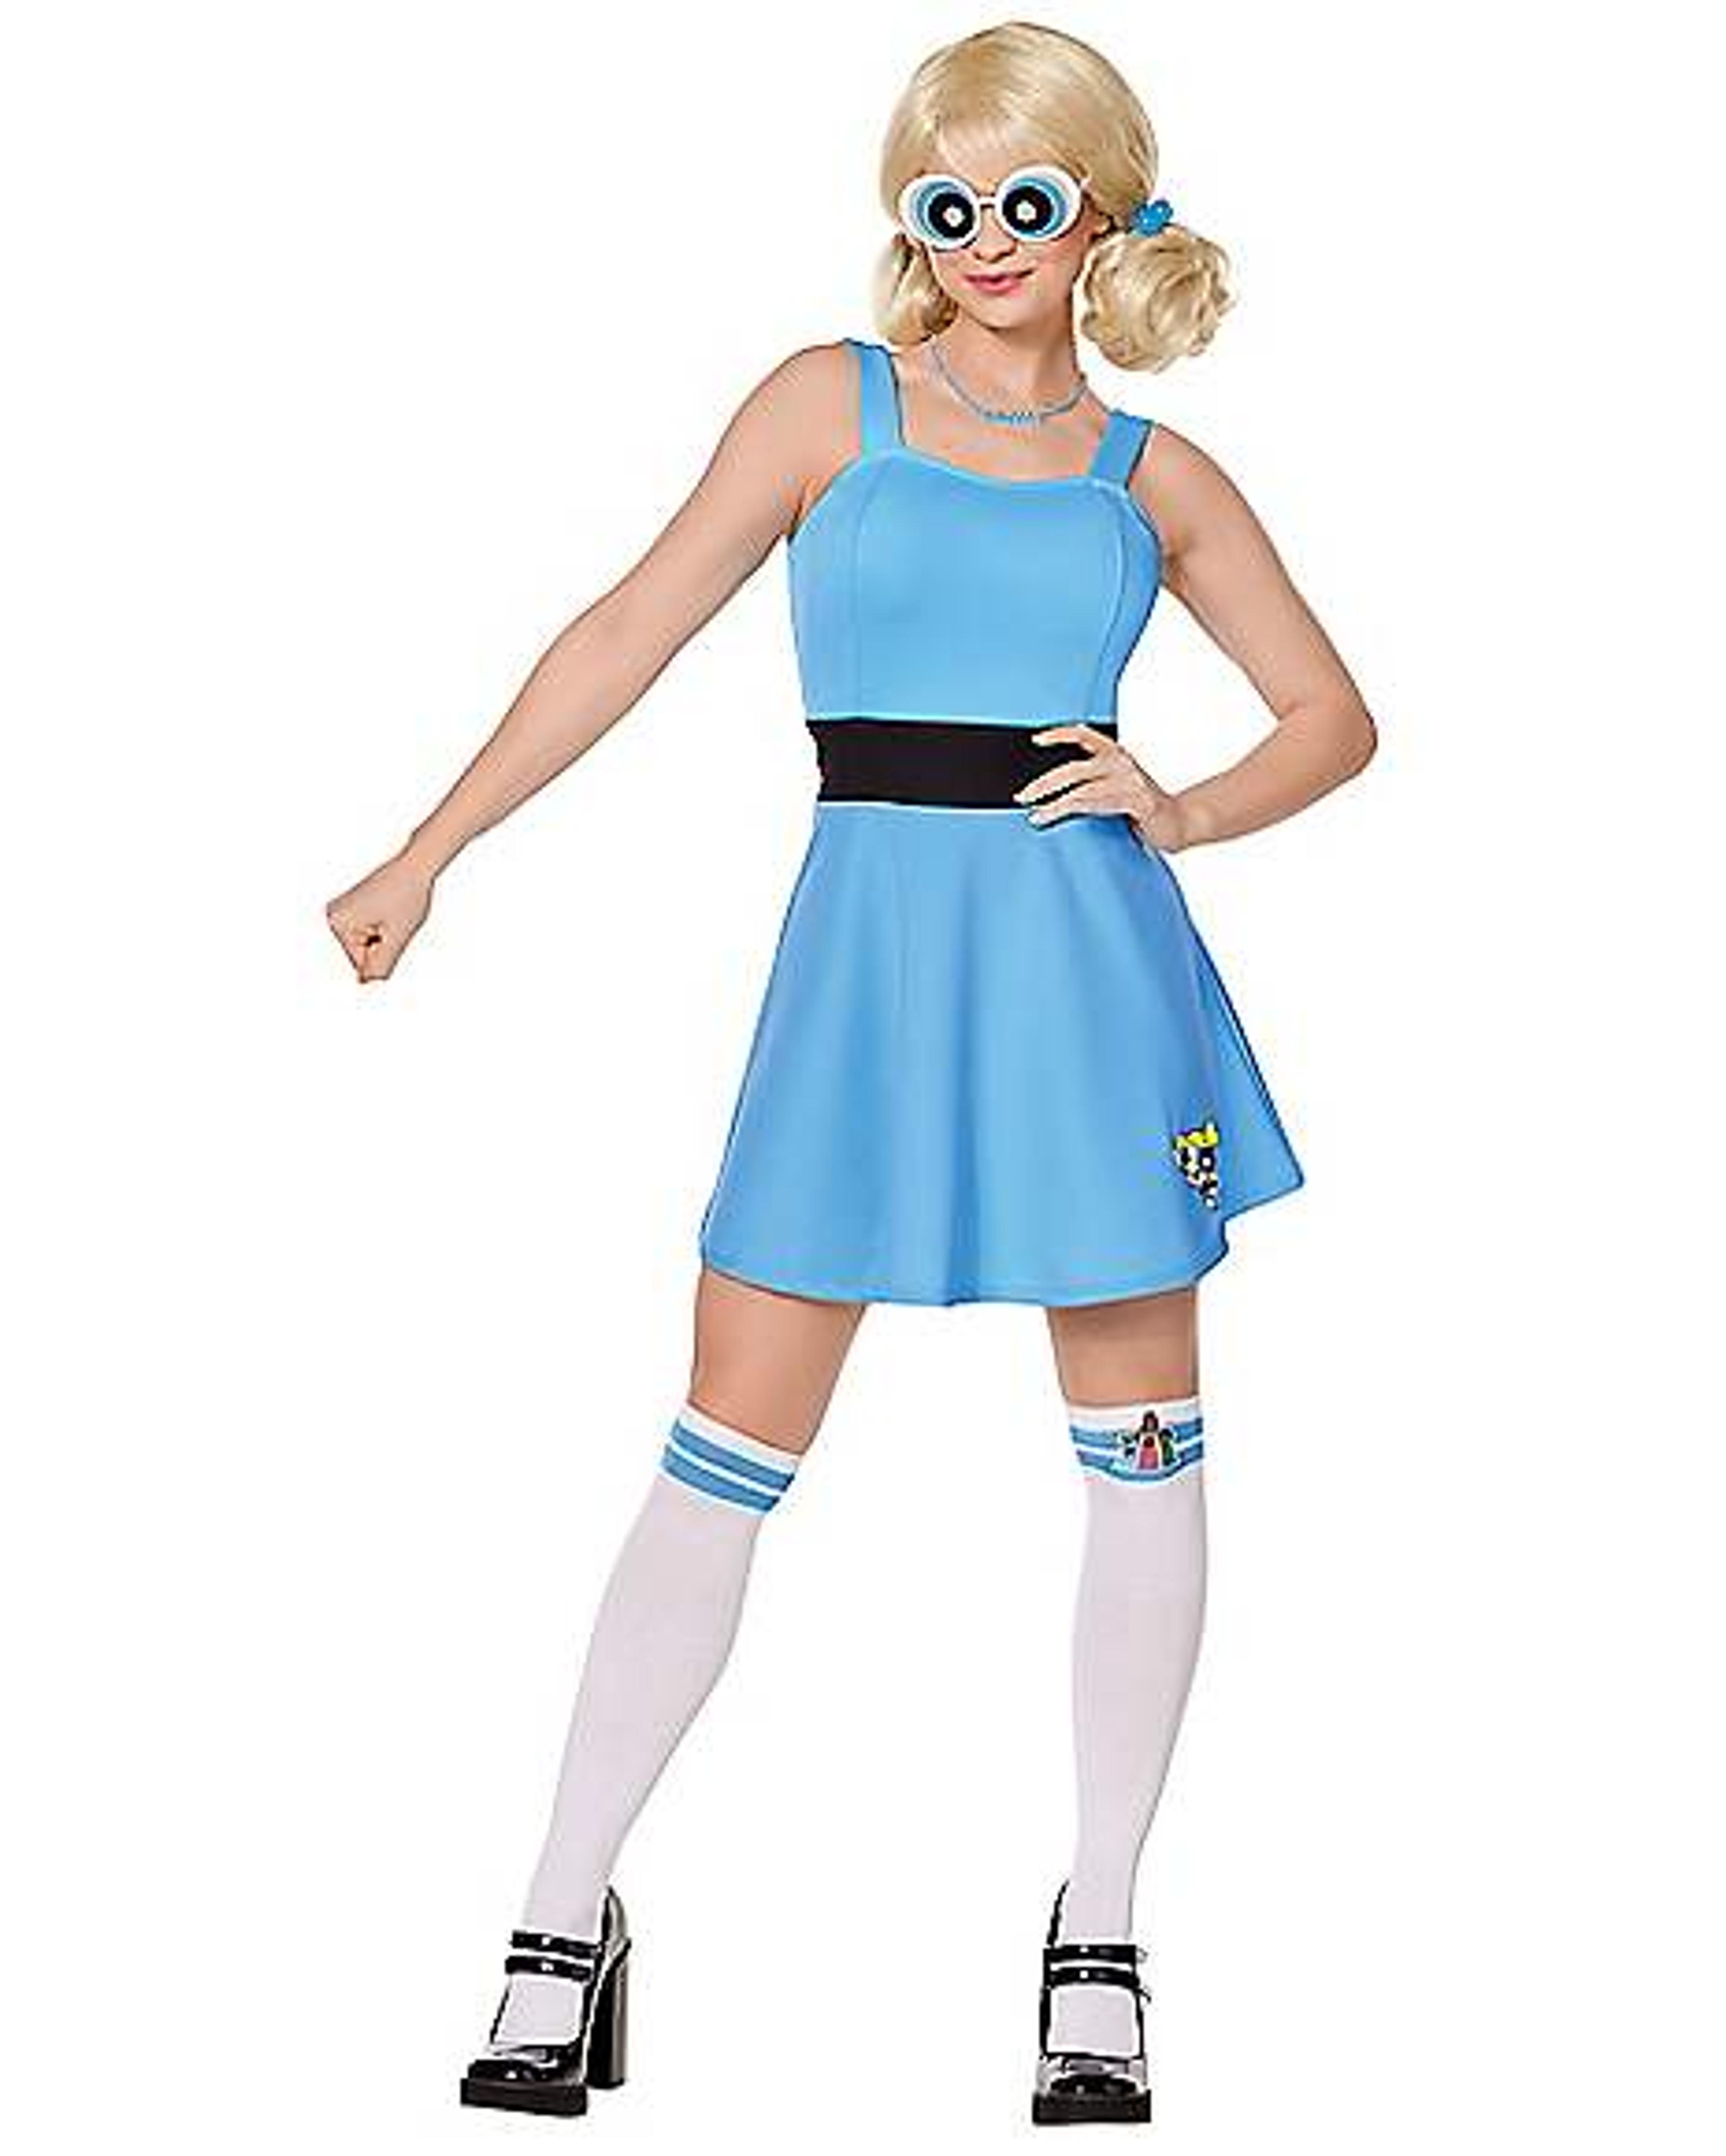 Adult Bubbles Costume - The Powerpuff Girls - Spirithalloween.com